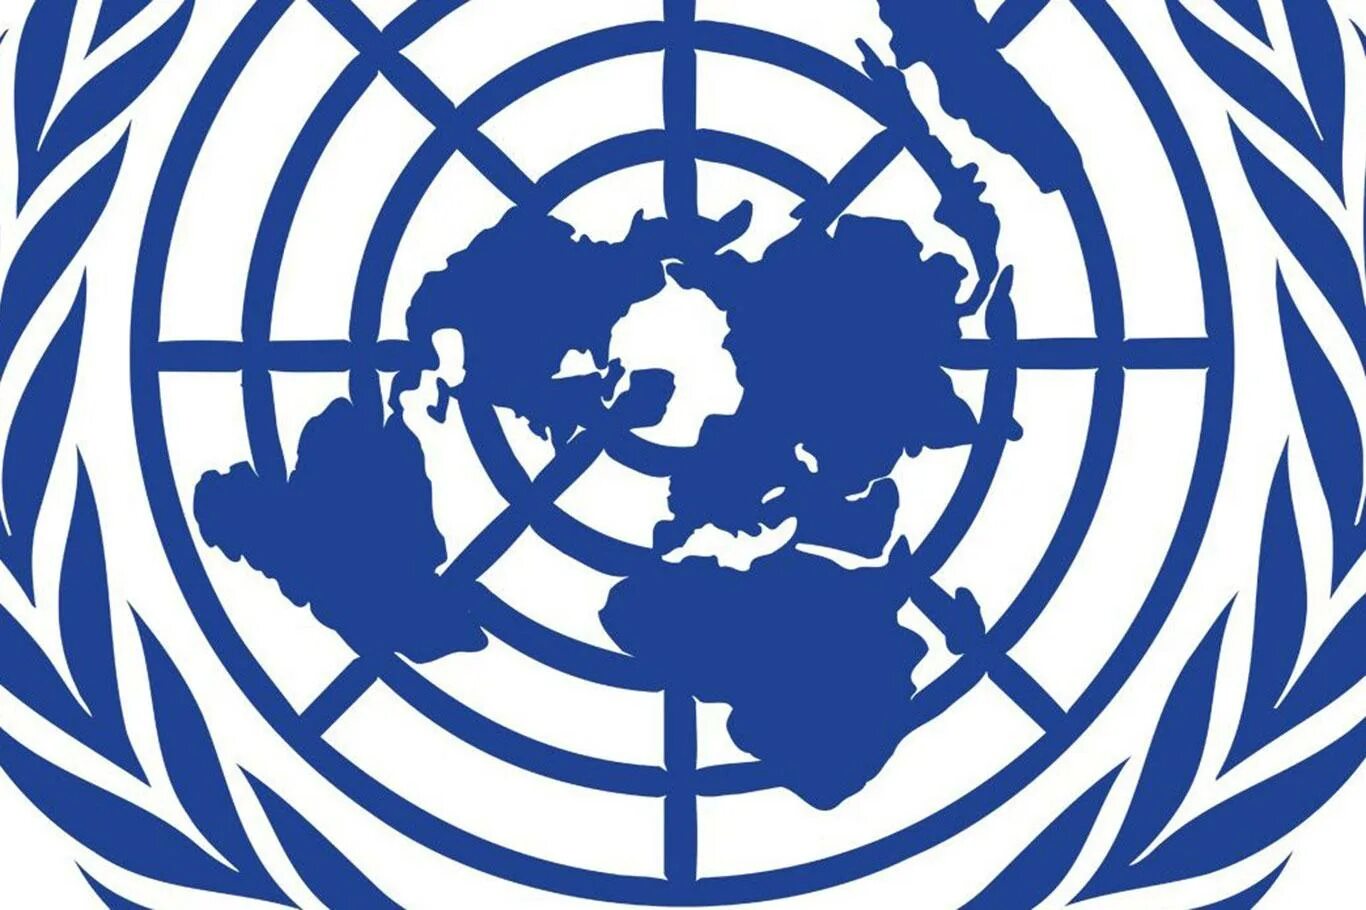 Оон 1977. Эмблема ООН. Совет безопасности ООН эмблема. Прав человека ООН. Международная Хельсинкская Федерация по правам человека.